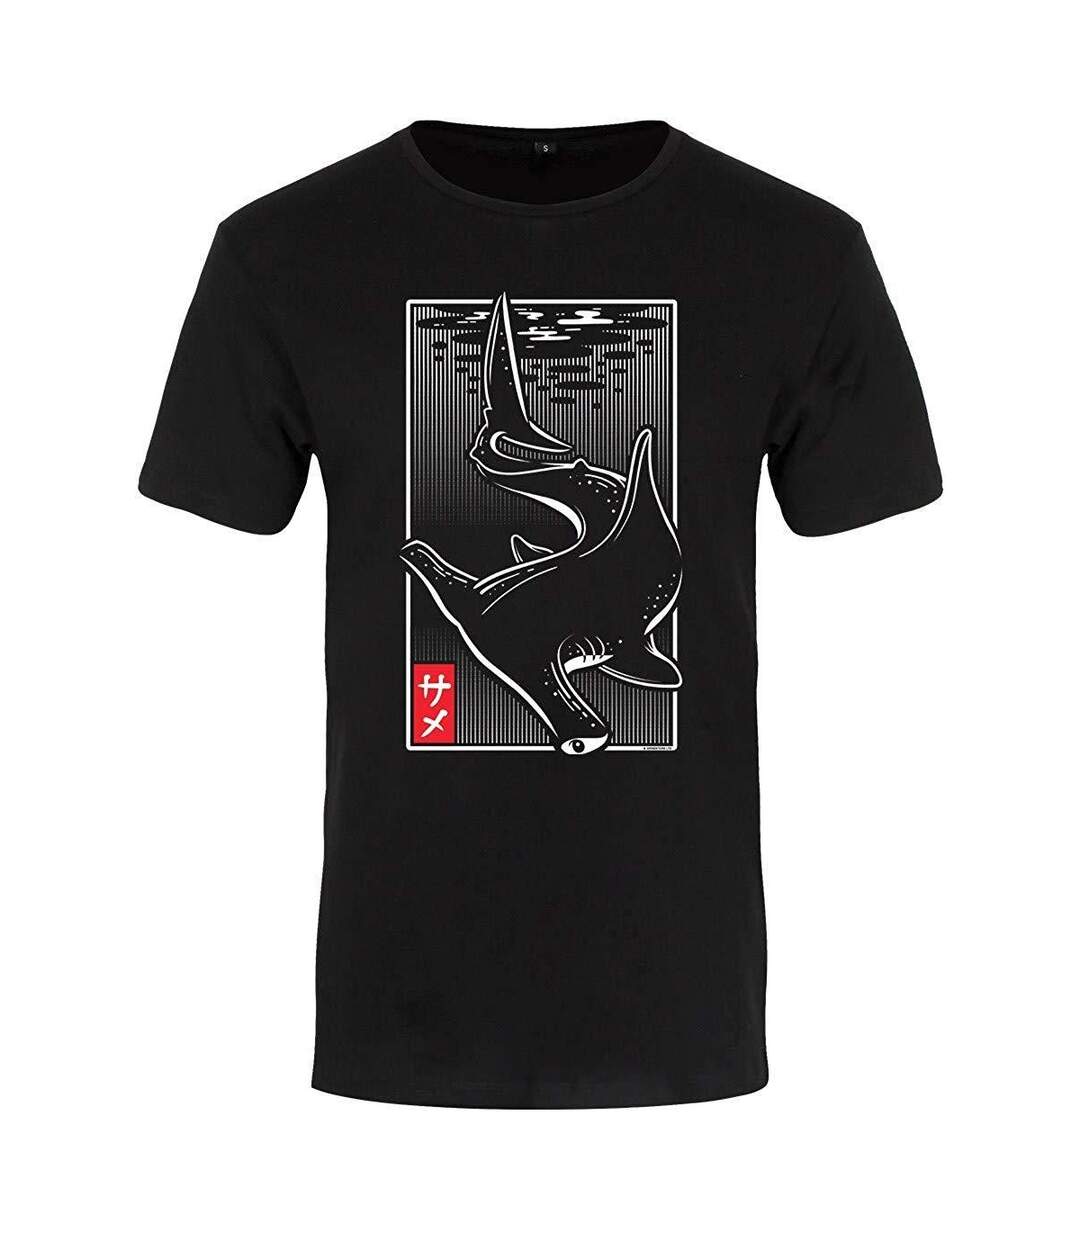 Unorthodox Collective - T-shirt ORIENTAL SHARK - Homme (Noir) - UTGR1389